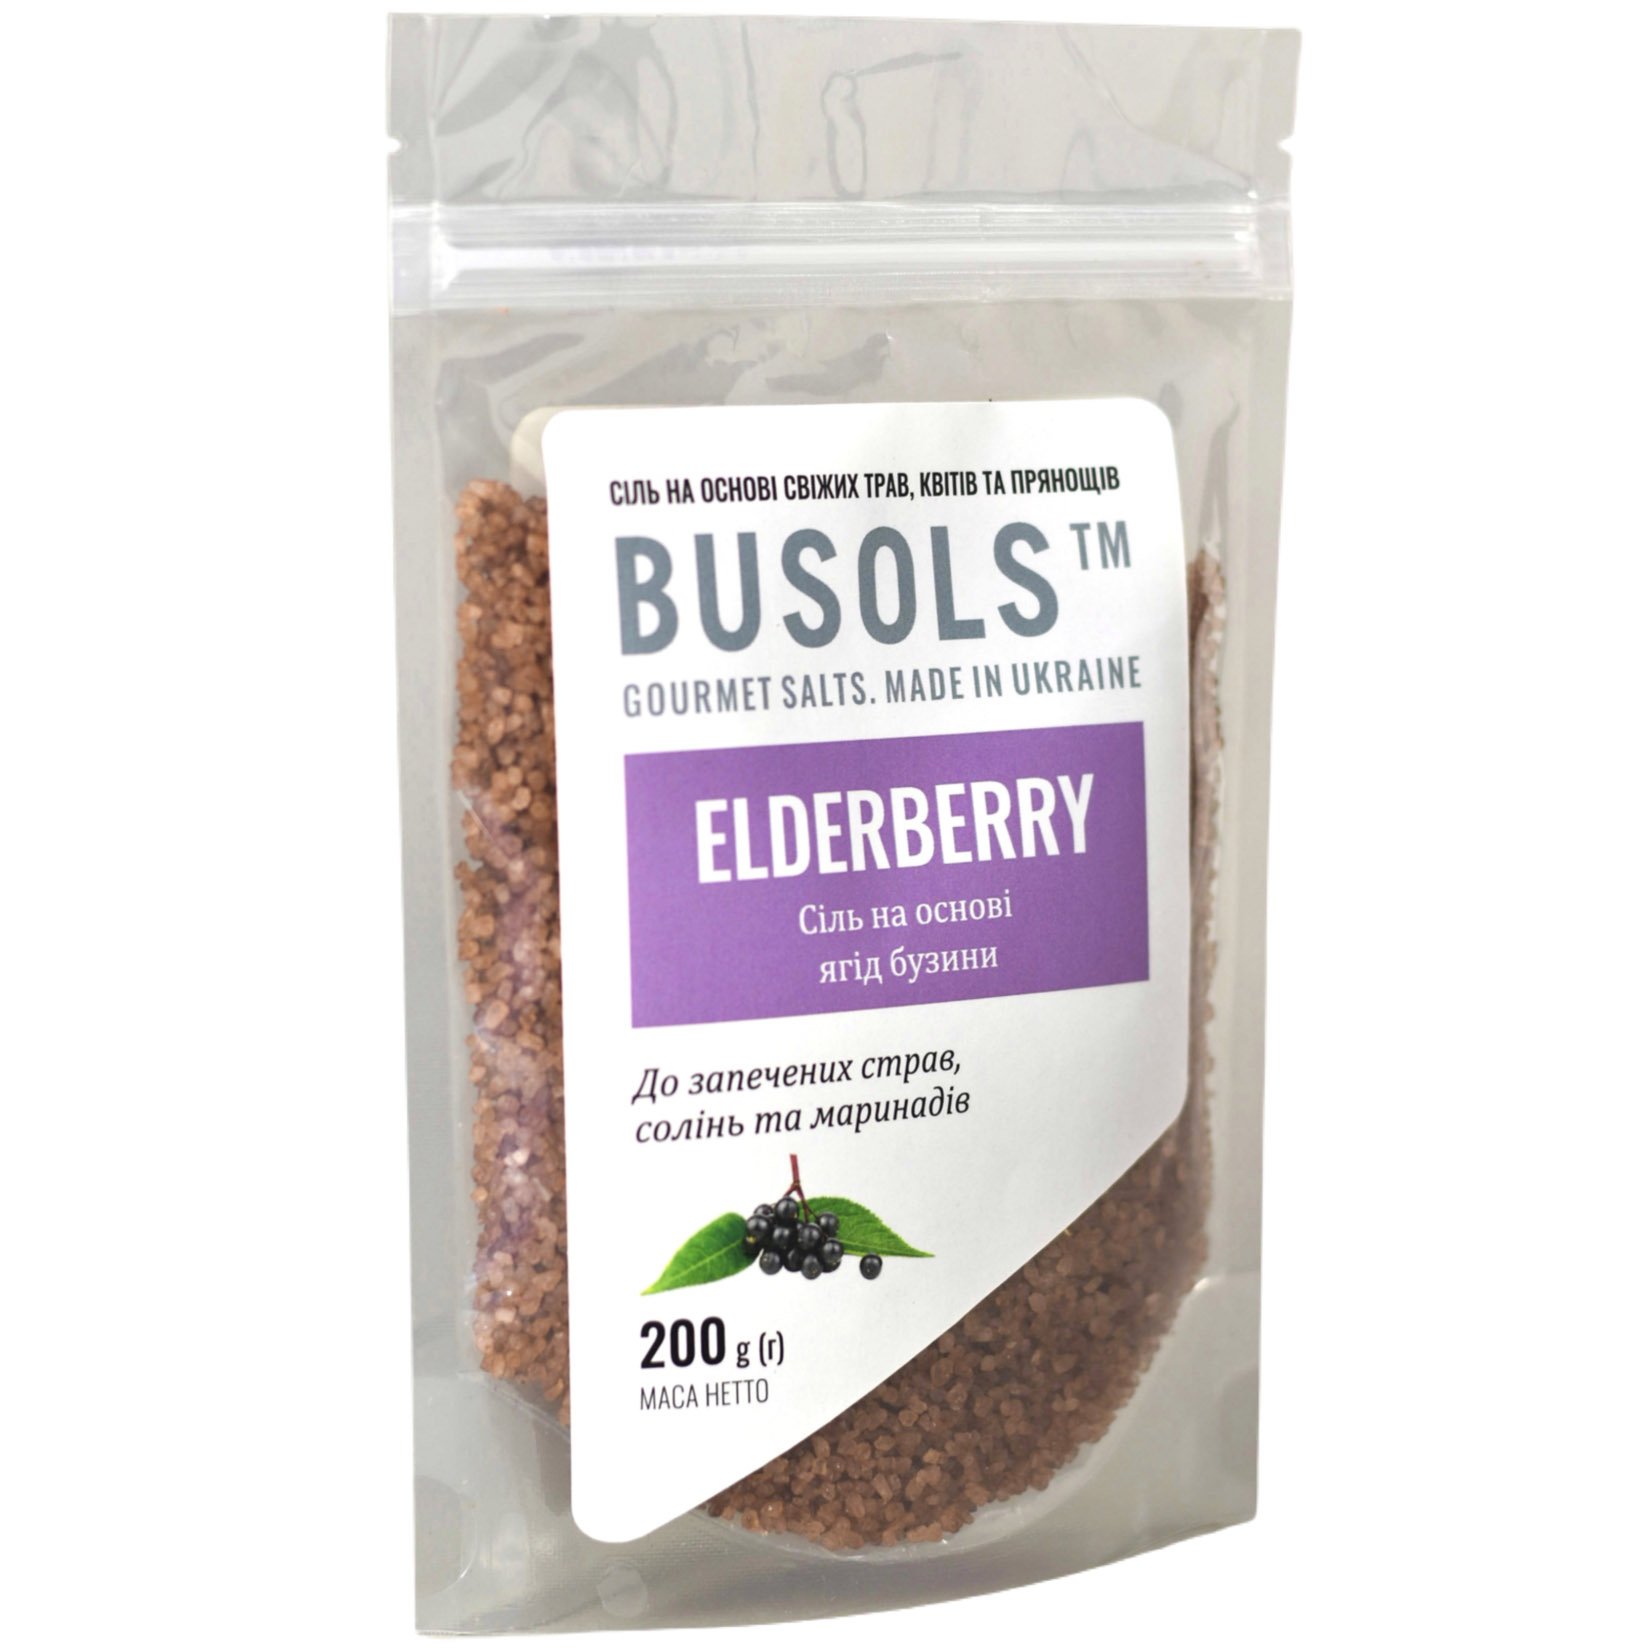 Соль Busоls Elderberry, на основе бузины, 200 г - фото 1